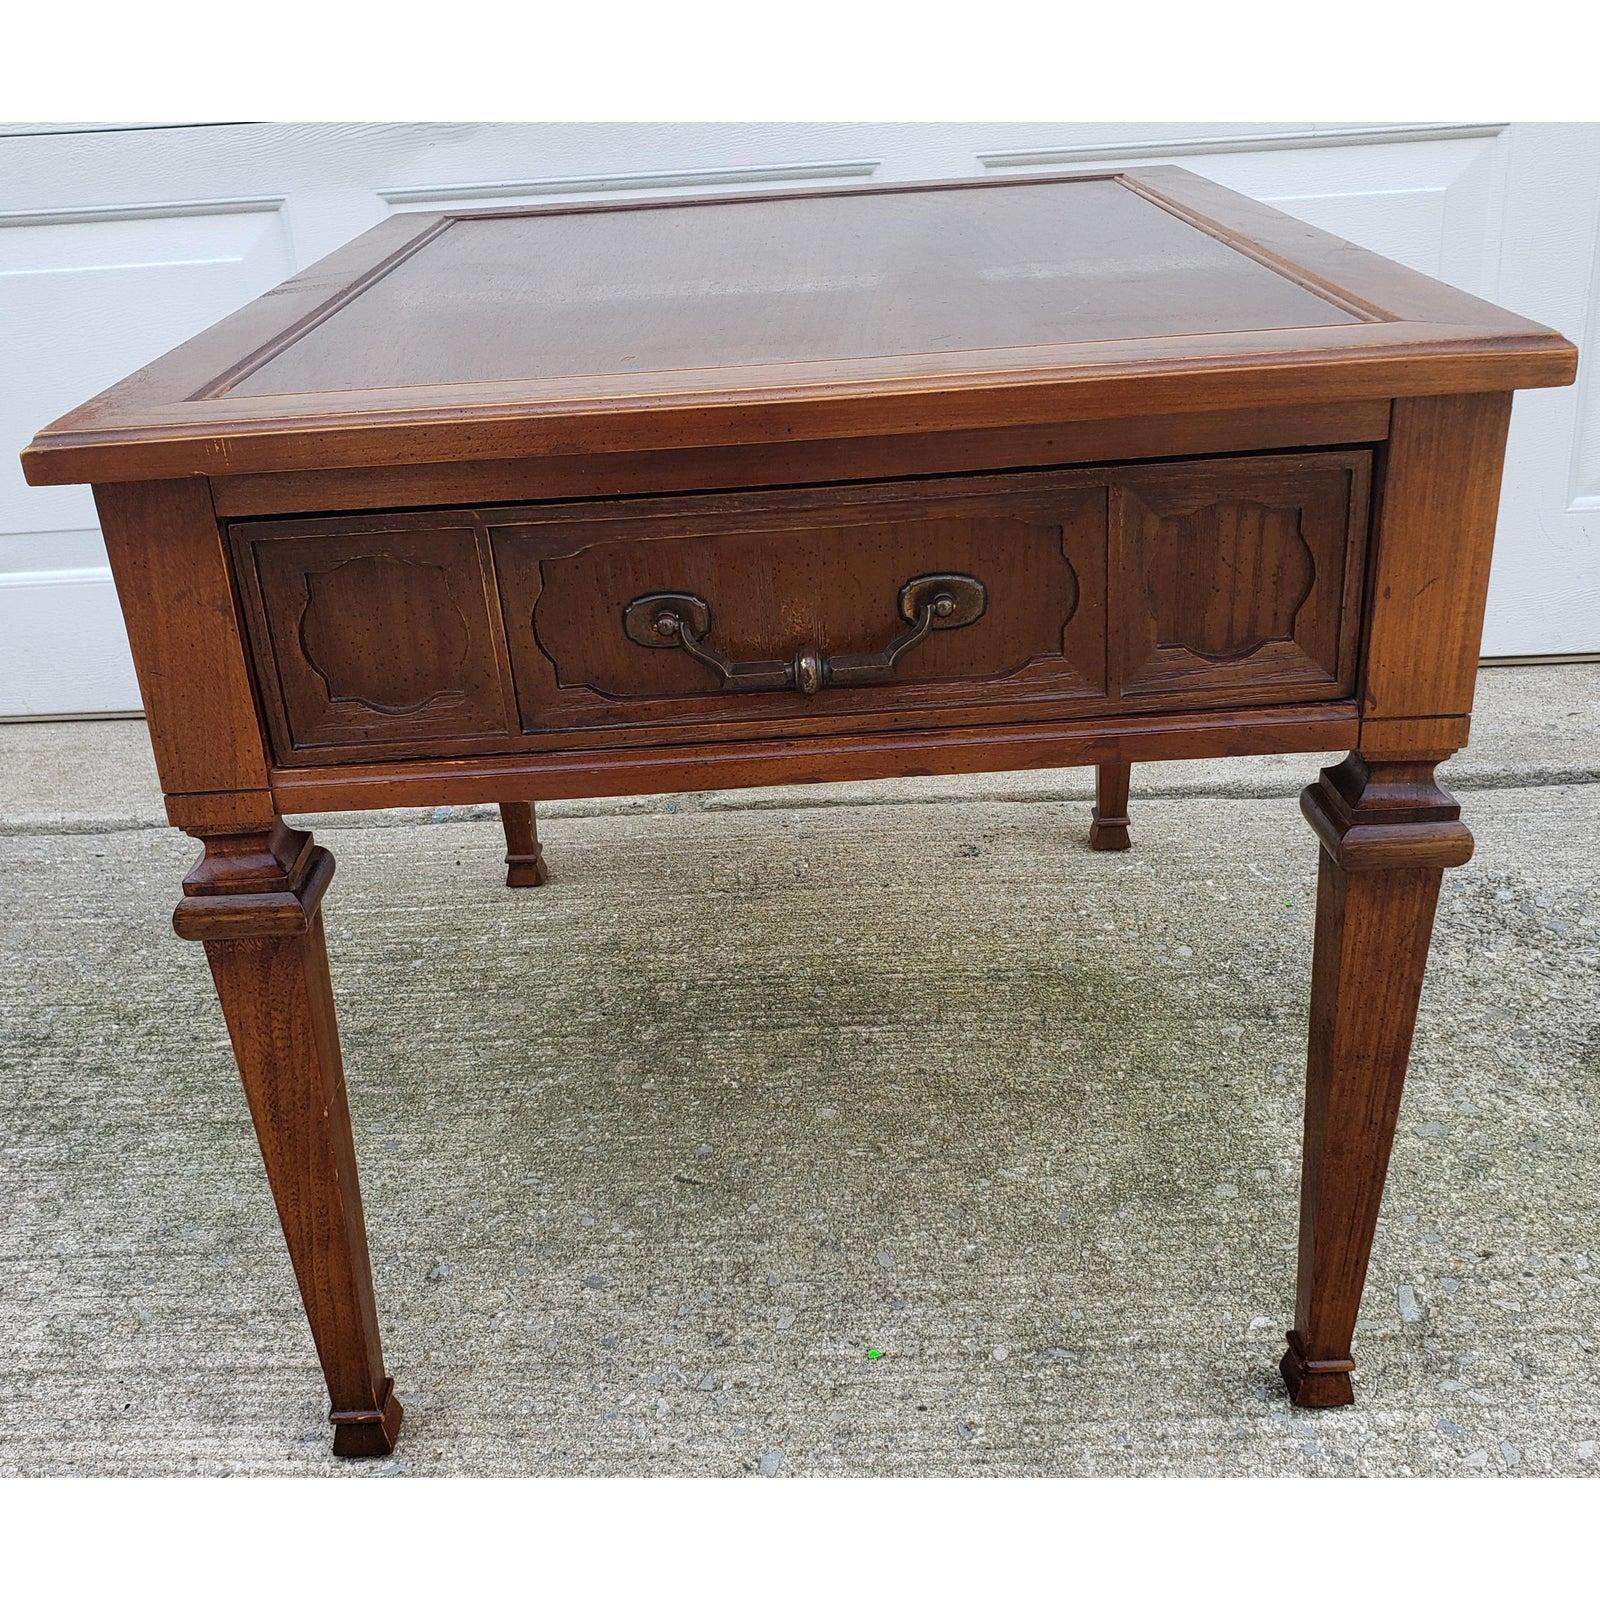 Table d'appoint en bois de noyer de 1967 avec un tiroir. Il a la poignée originale en laiton. La table mesure 22.5 